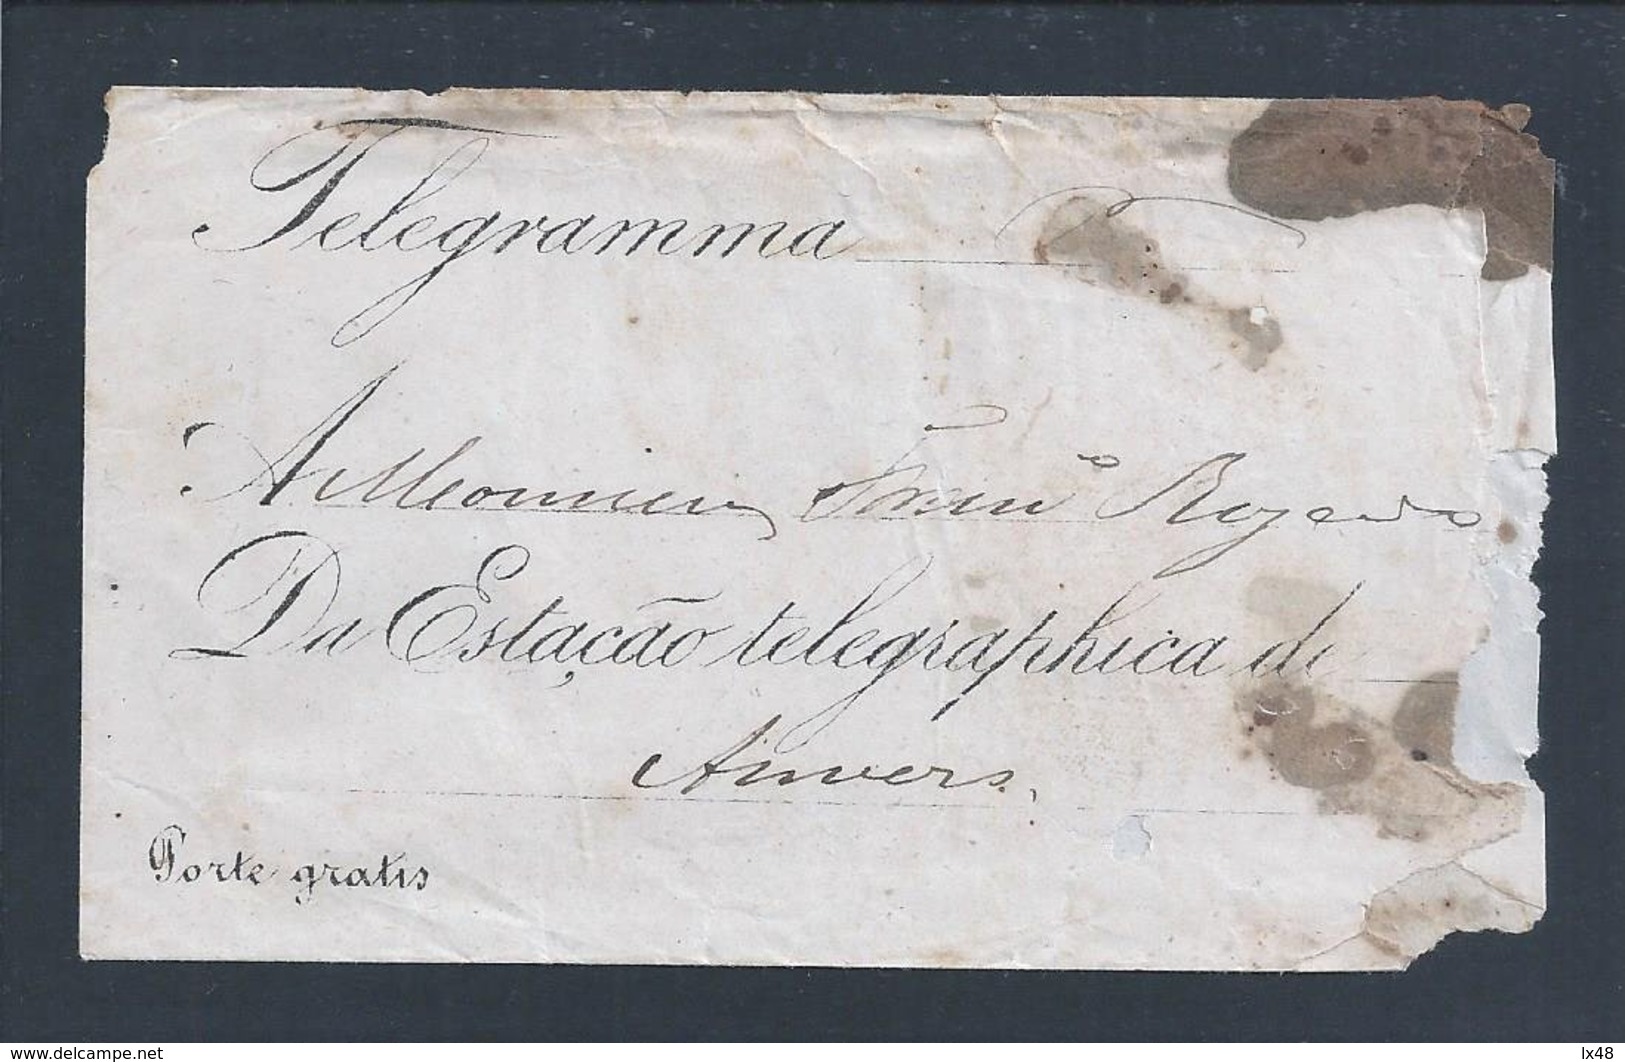 Raro Telegrama Da Estação Telegráphica De Lagos, 1869. Direcção Dos Telegraphos E Pharoes Do Reino. Algarve. 2sc. Anvers - Briefe U. Dokumente